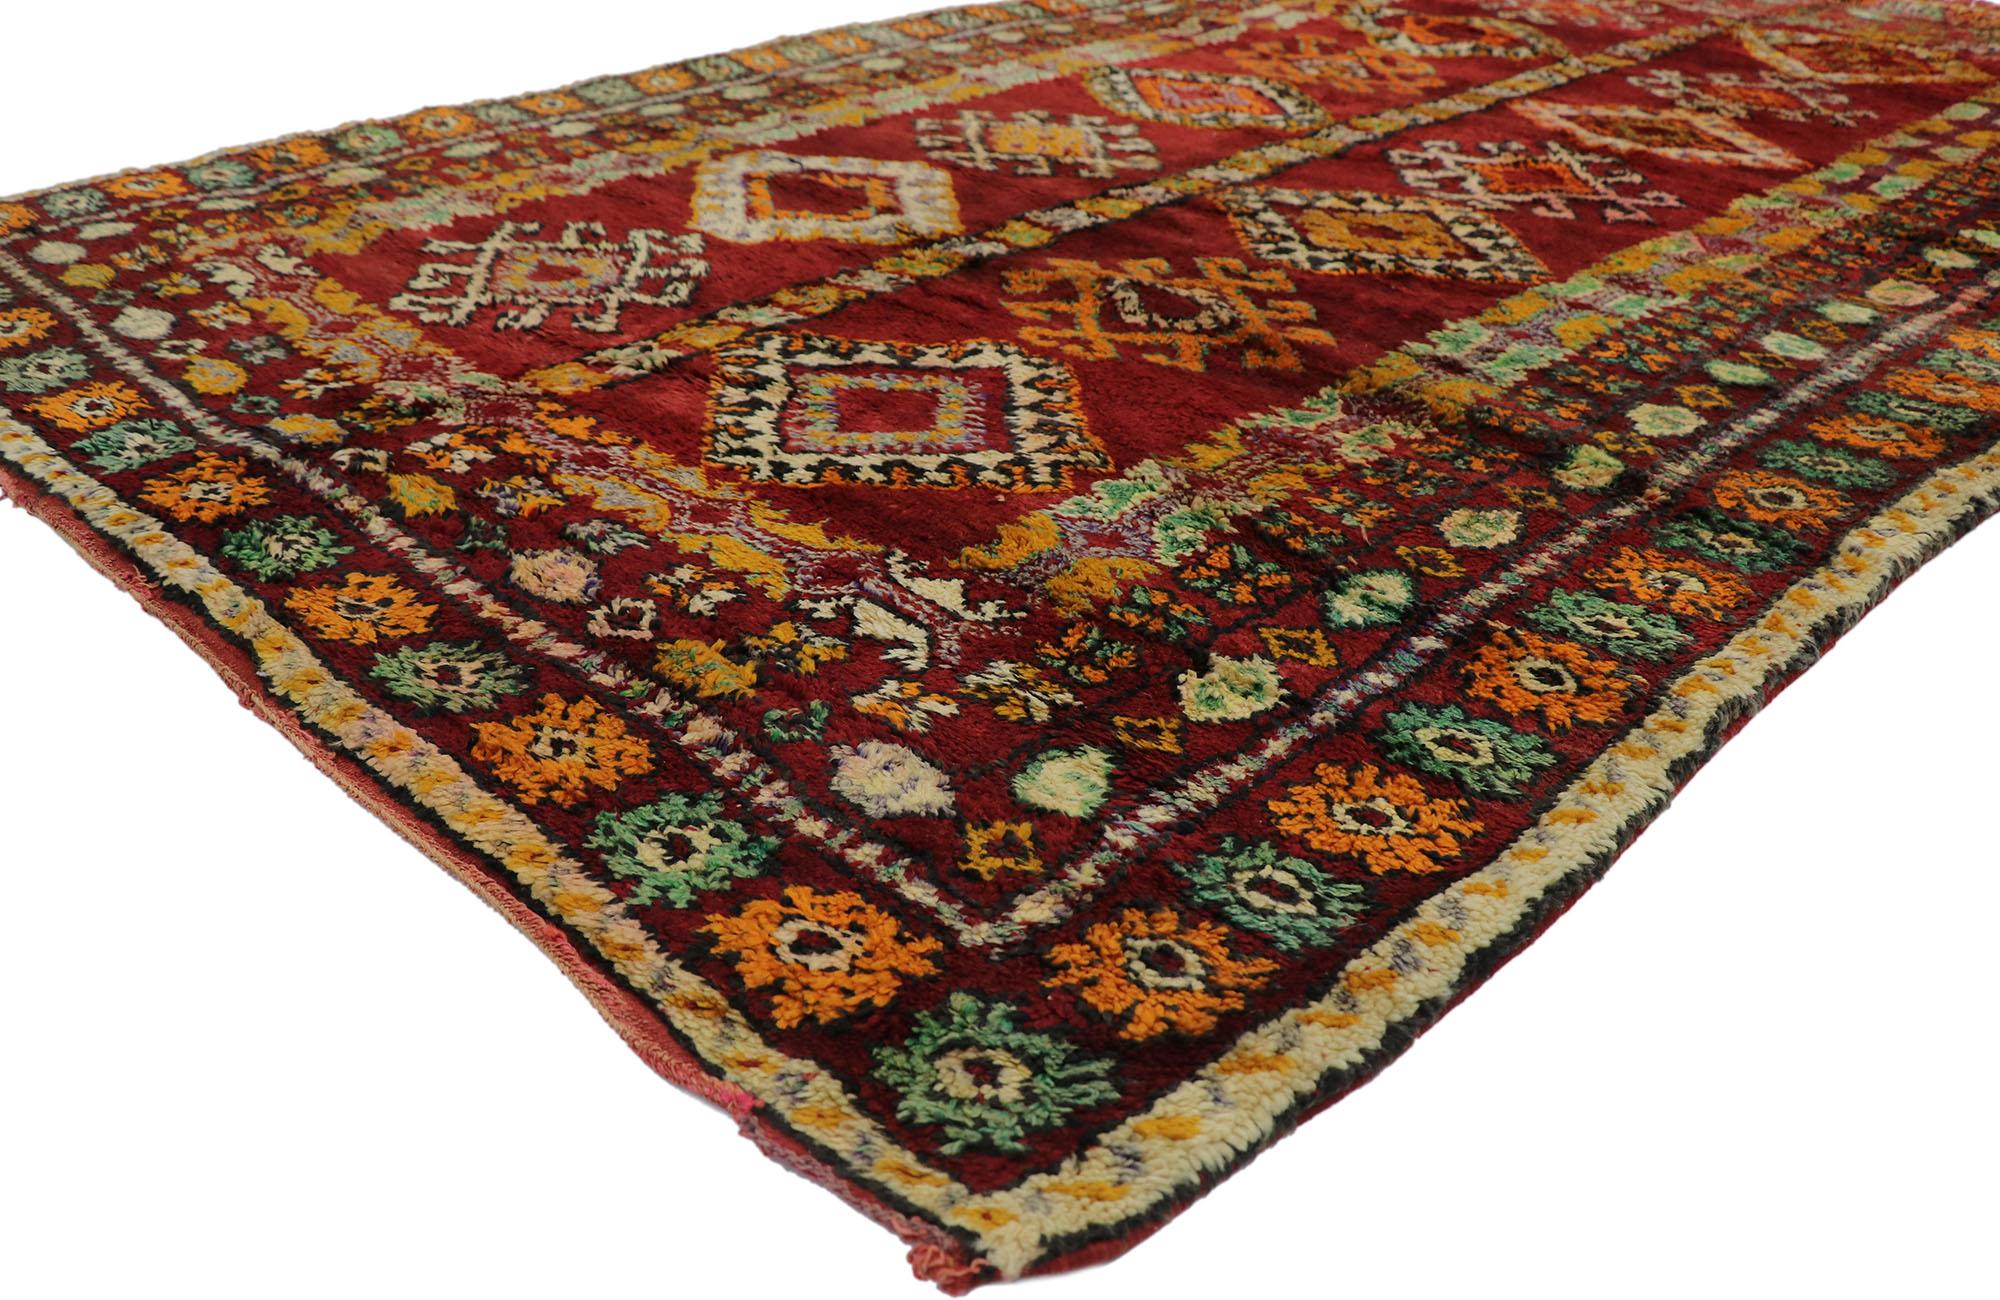 21506 Vintage Beni M'Guild Marokkanischer Teppich mit Stammes-Stil 05'11 x 09'03. Dieser handgeknüpfte marokkanische Beni M'Guild-Teppich aus alter Berberwolle besticht durch sein kühnes, ausdrucksstarkes Design, seine unglaublichen Details und